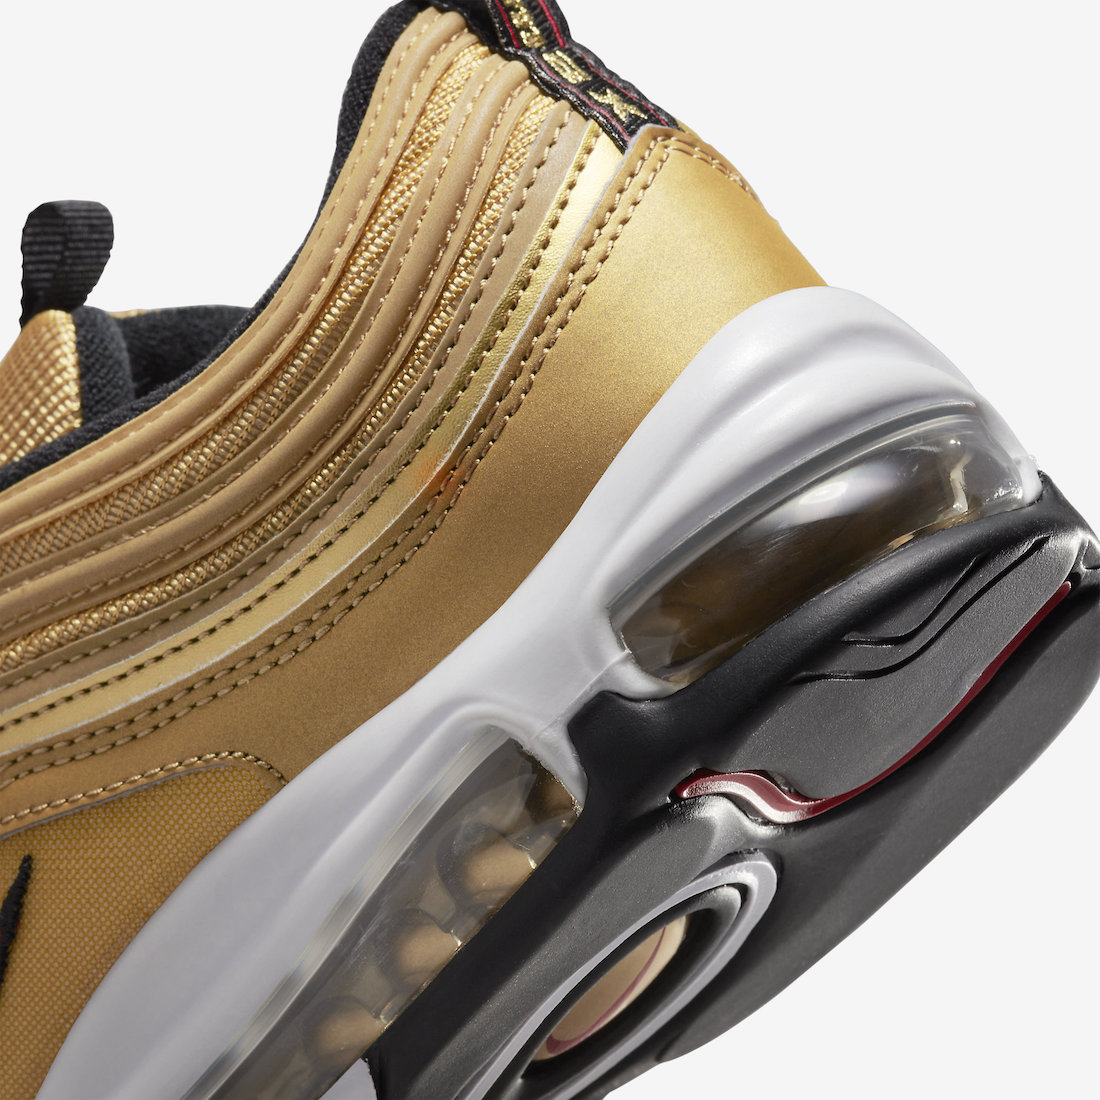 Nike Air Max 97 Metallic Gold Bullet DM0028-700 Release Date